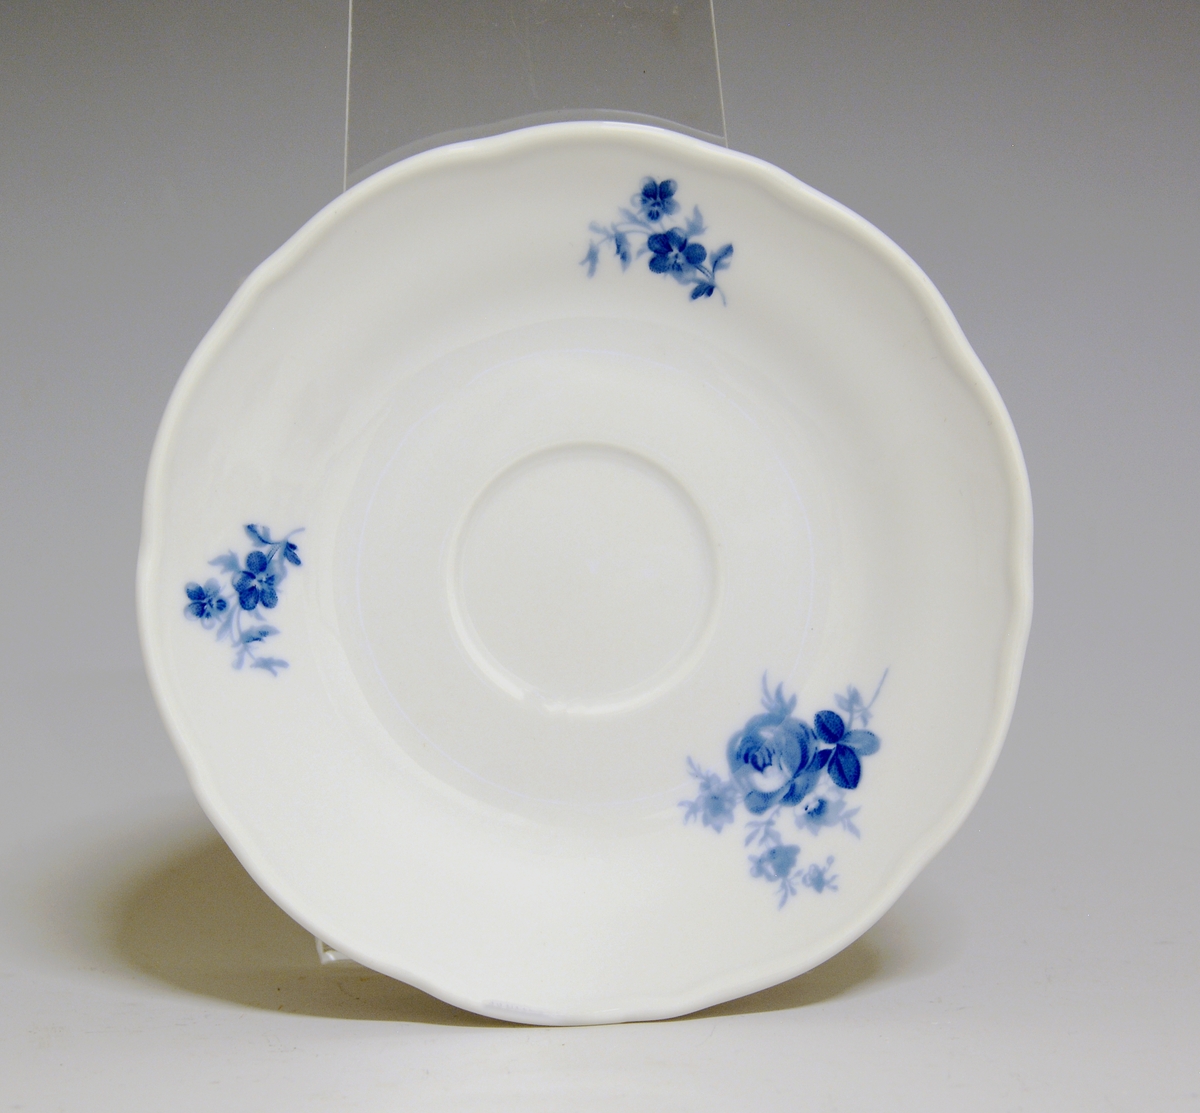 Kaffeskål av porselen. Hvit glasur. Blå rose på fanen.
Modell: Victoria, 1800
Dekor: Blå rose.